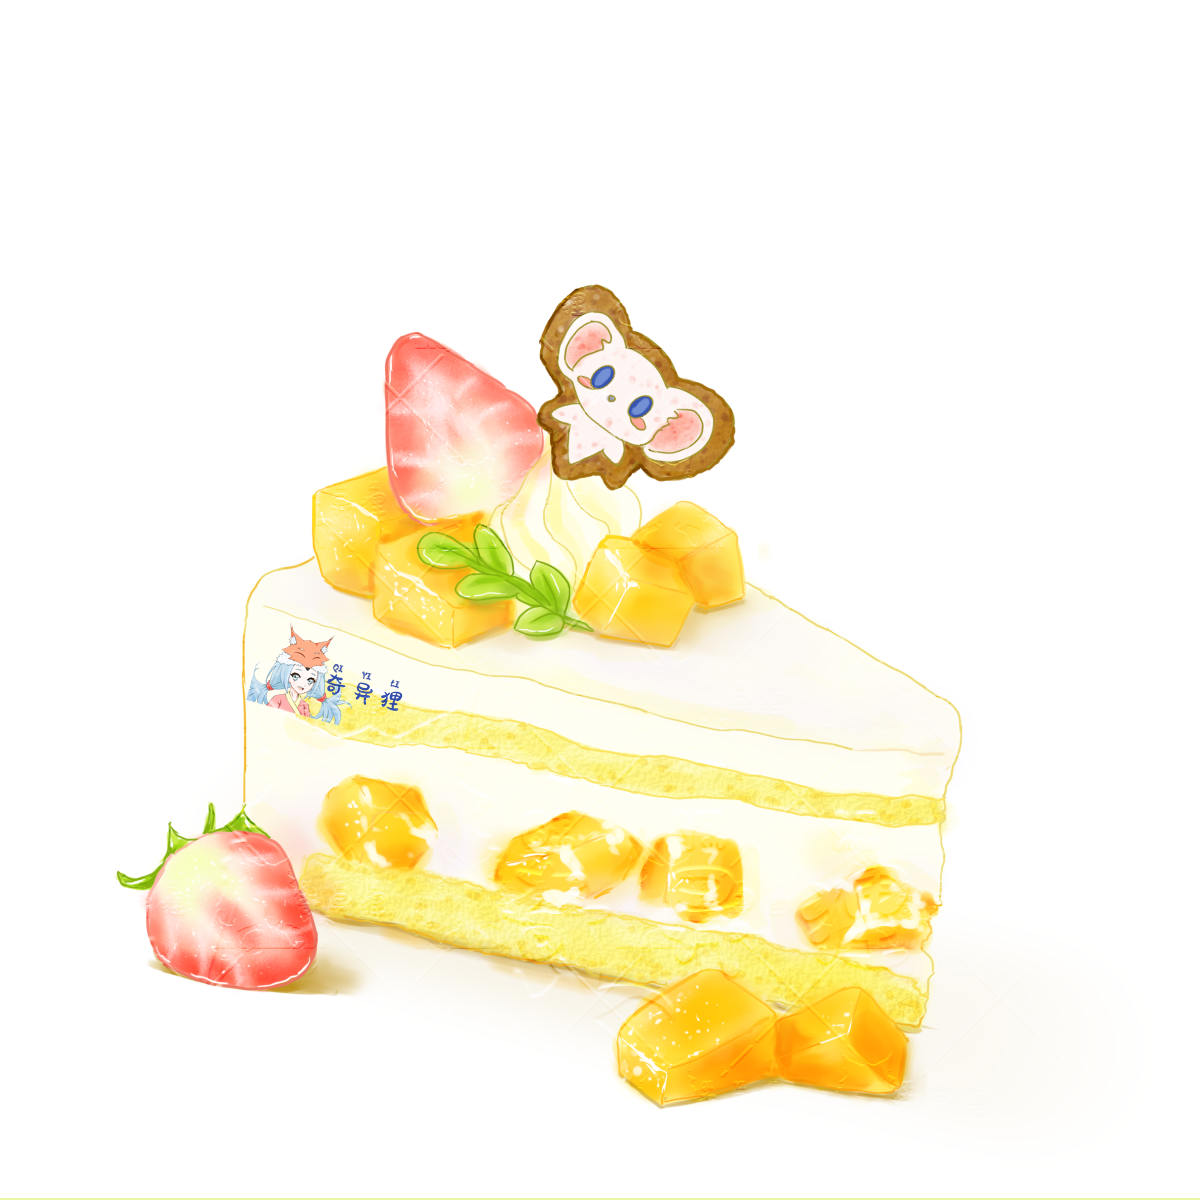 芒果多多小蛋糕-甜品美食